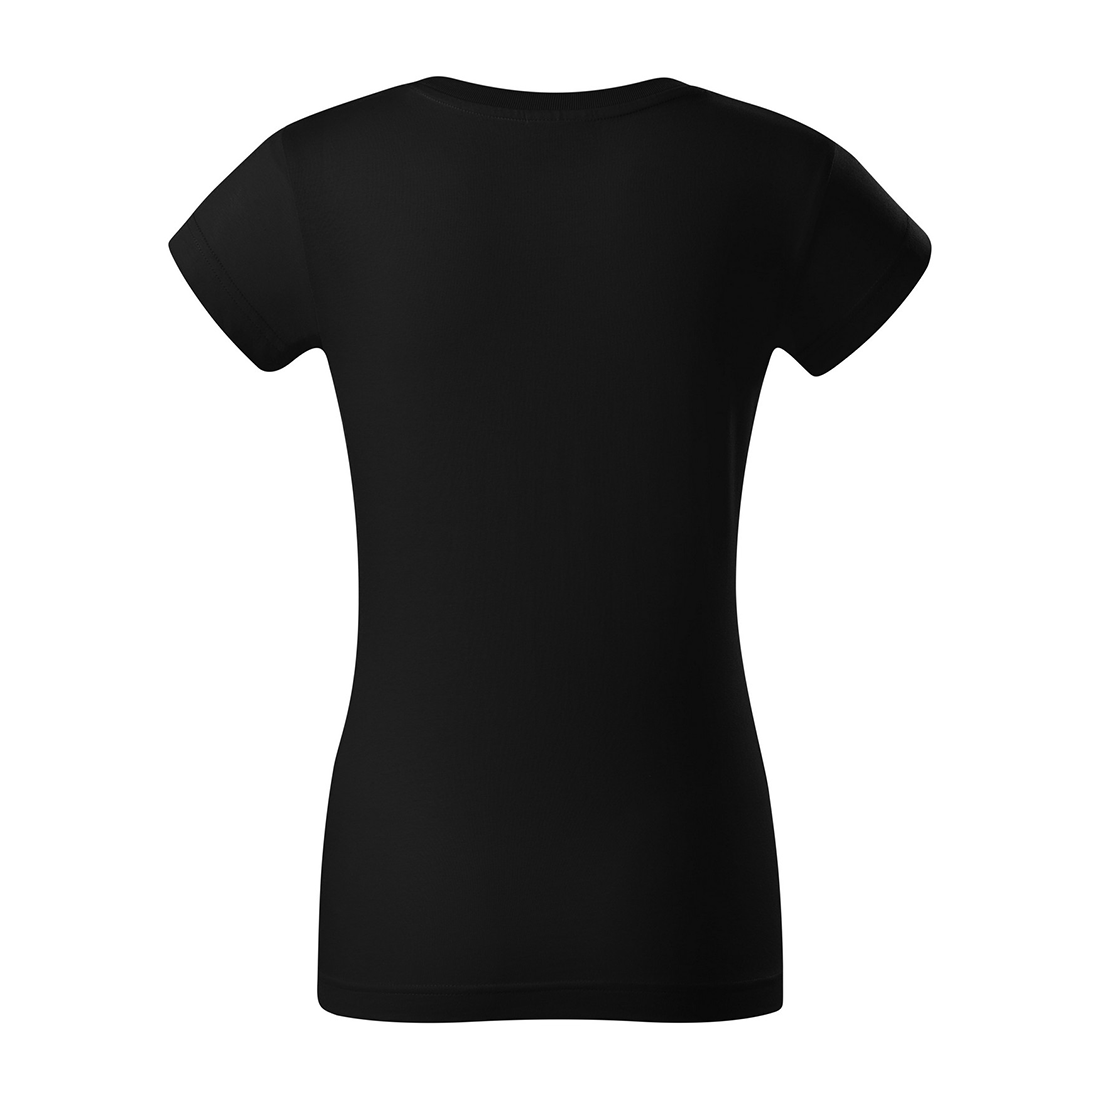 Pre-shrunk Women's T-shirt - Safetywear